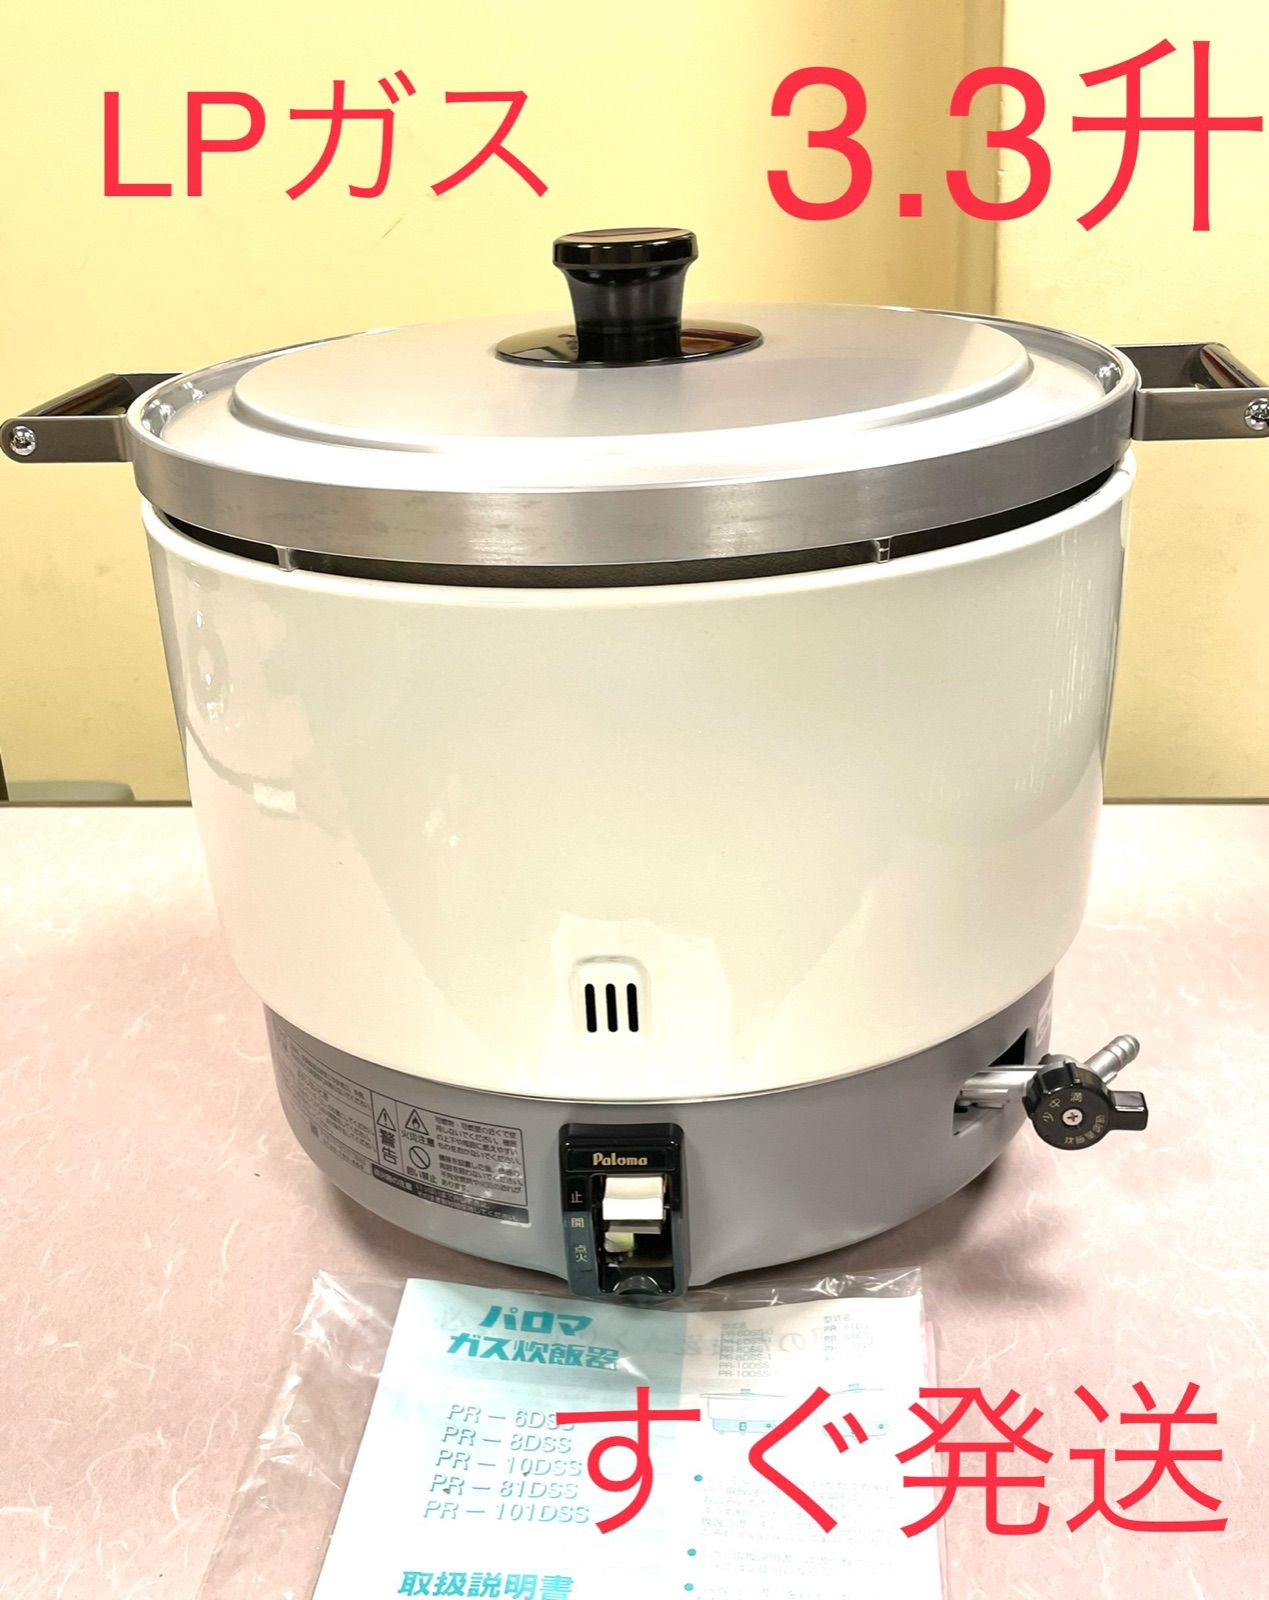 パロマ ガス炊飯器 PR-6DSS型 13A 代引不可 - 1